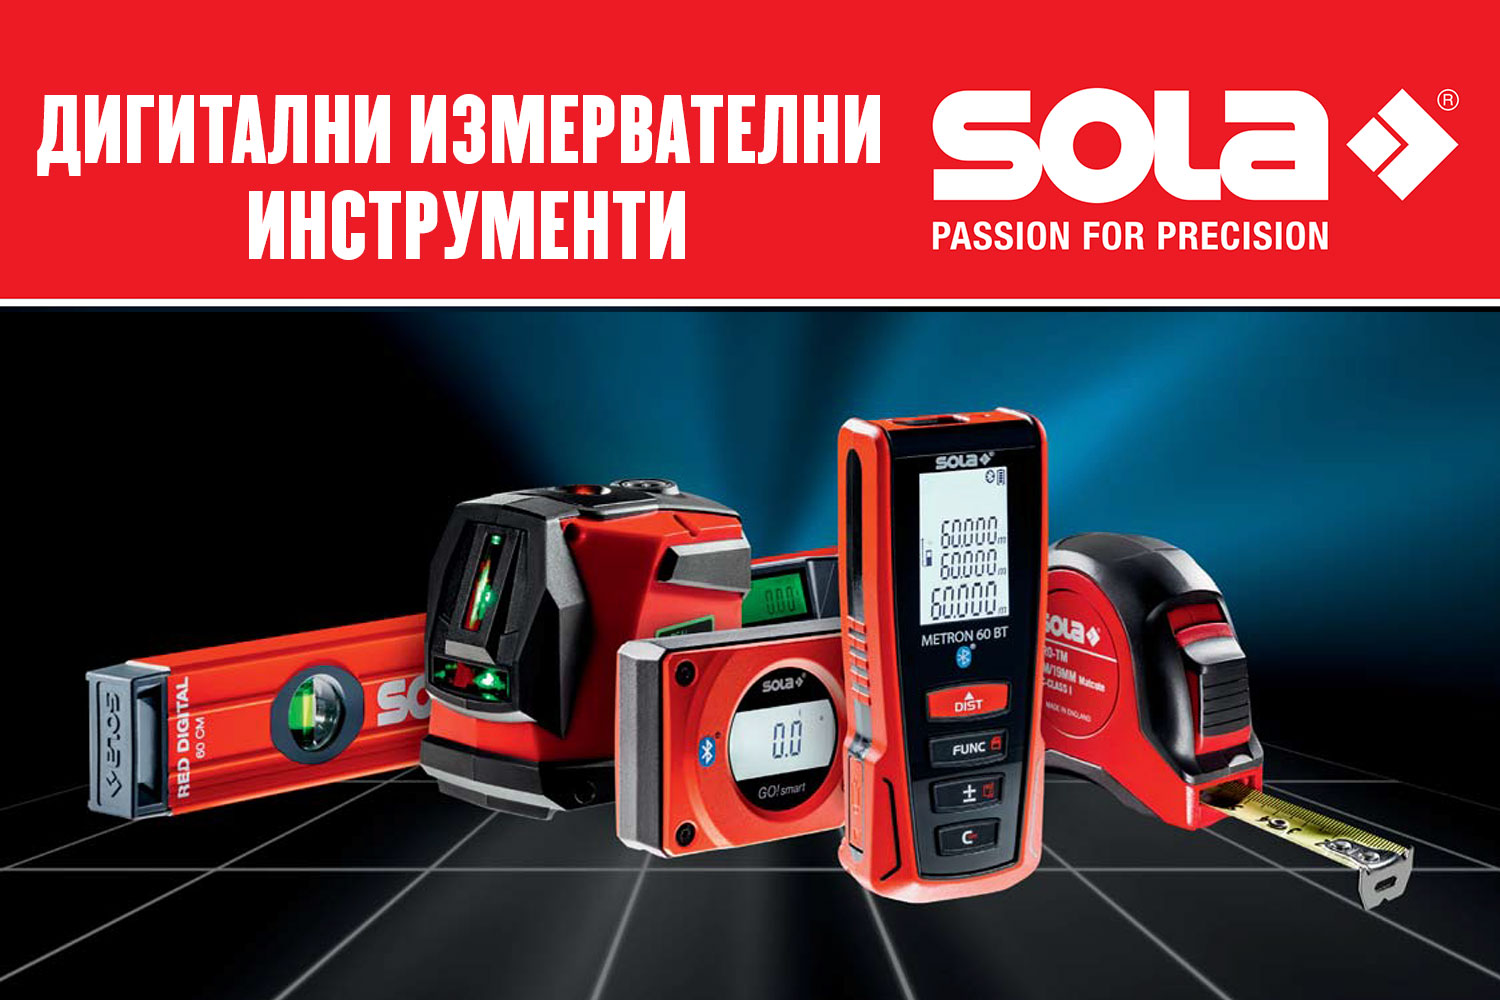 Дигитални измервателни инструменти SOLA